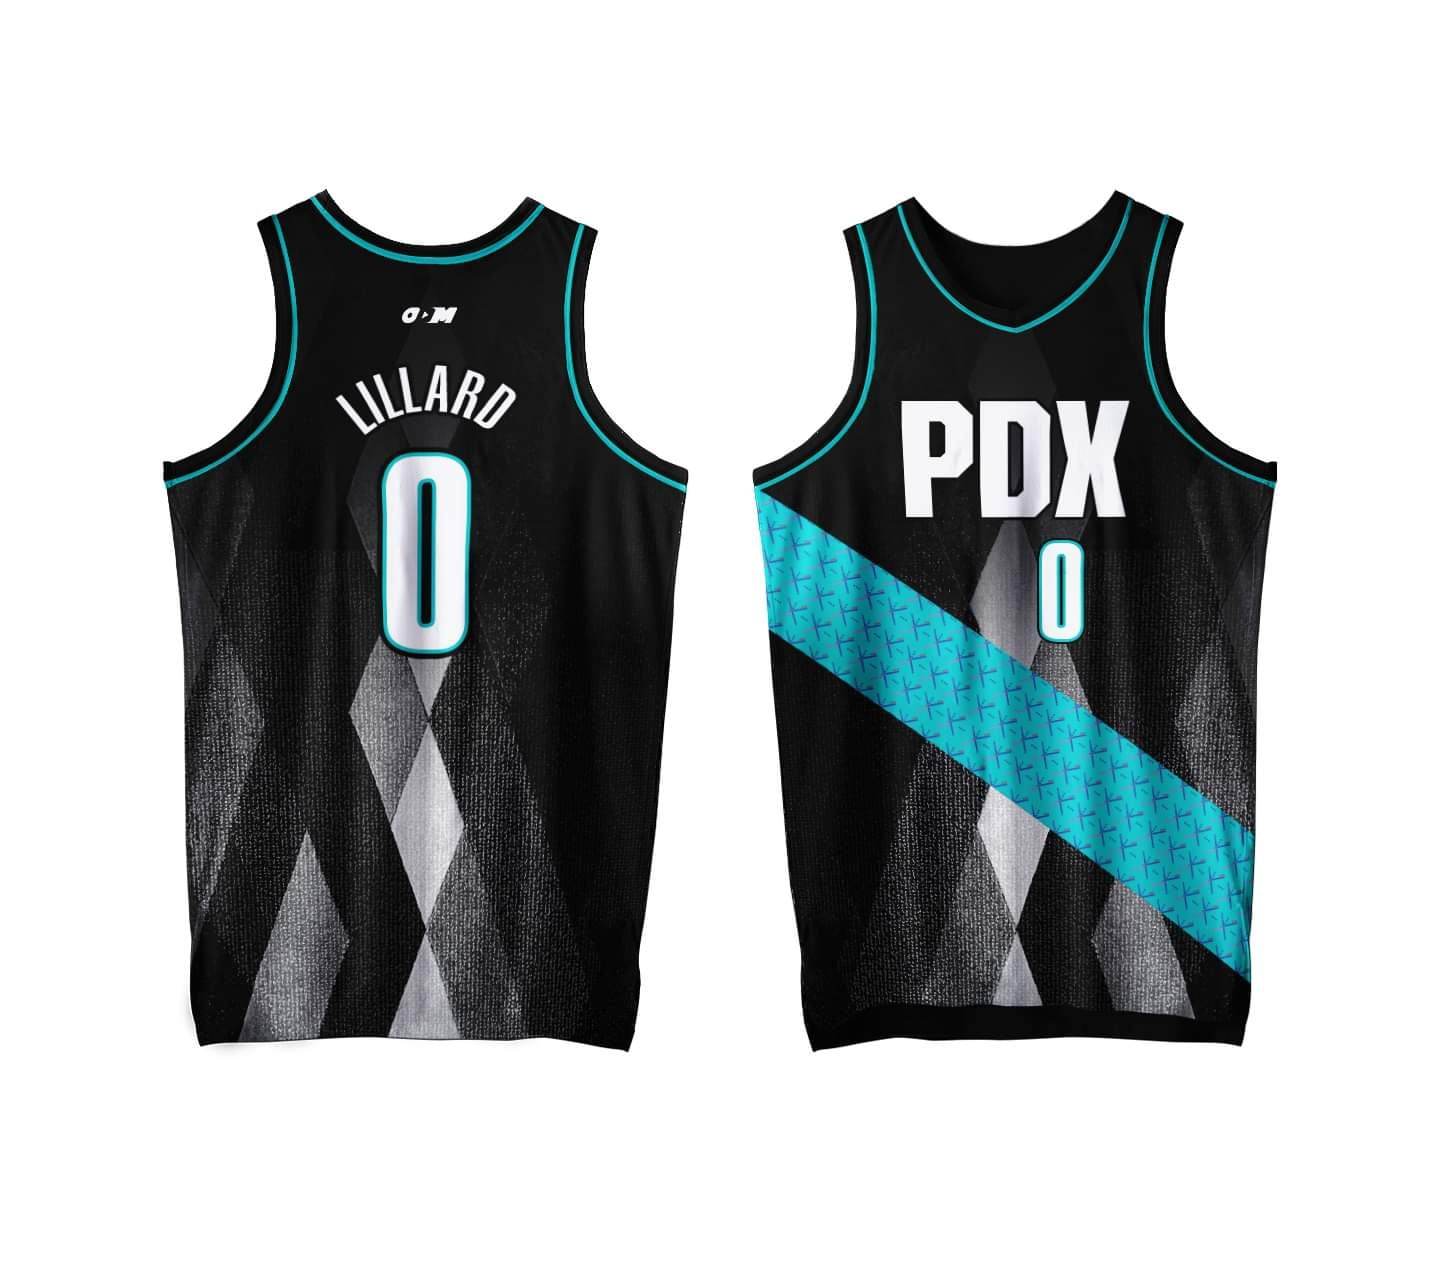 Portland NBA City Jerseys by ODM